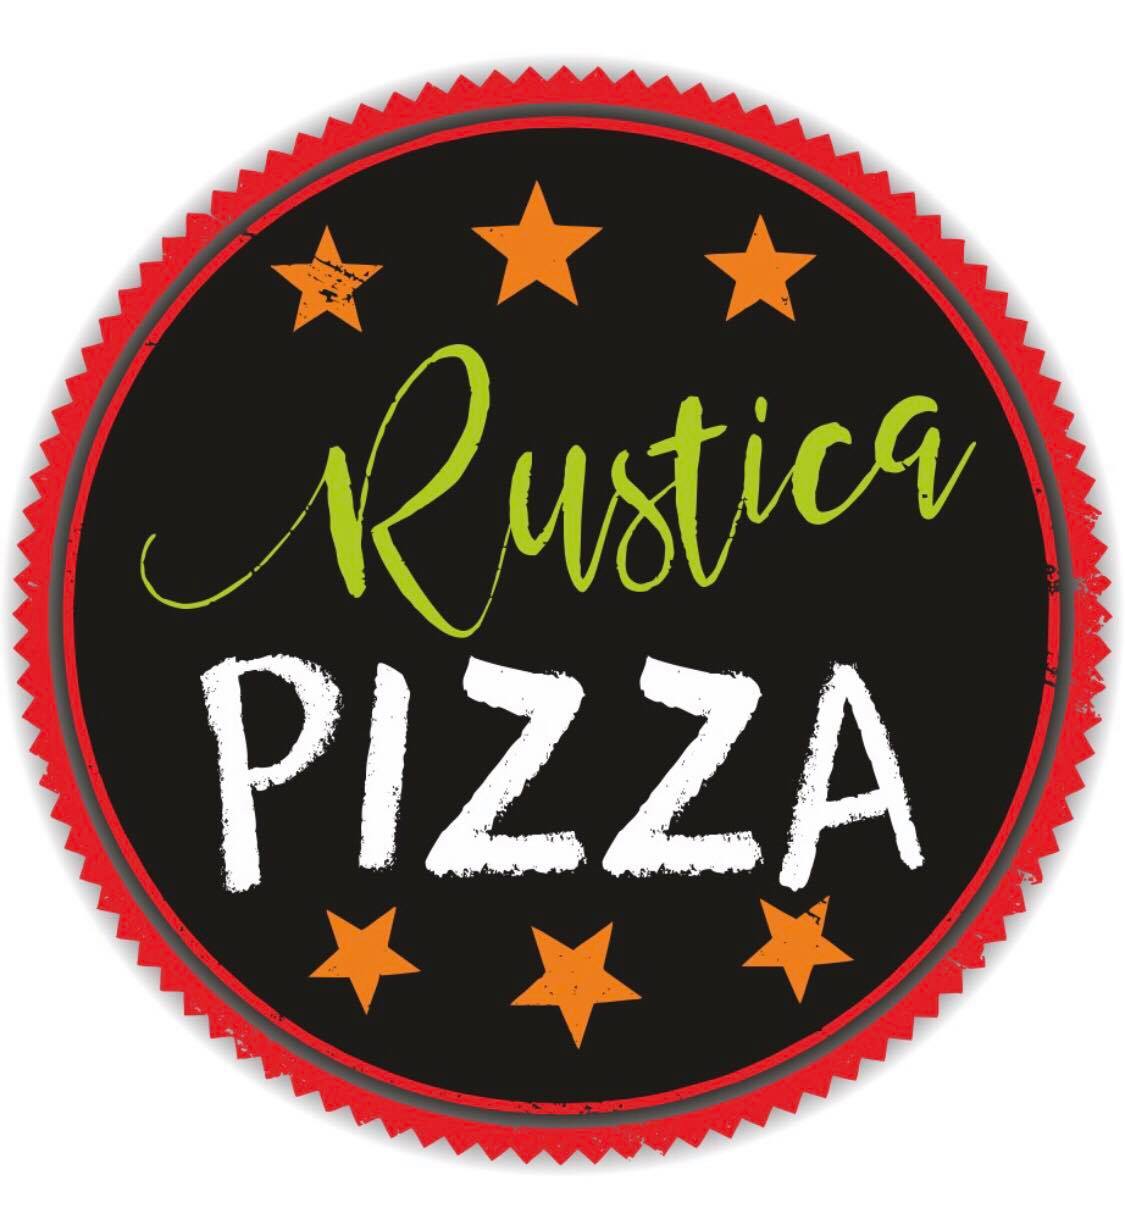 Rustica Pizzéria